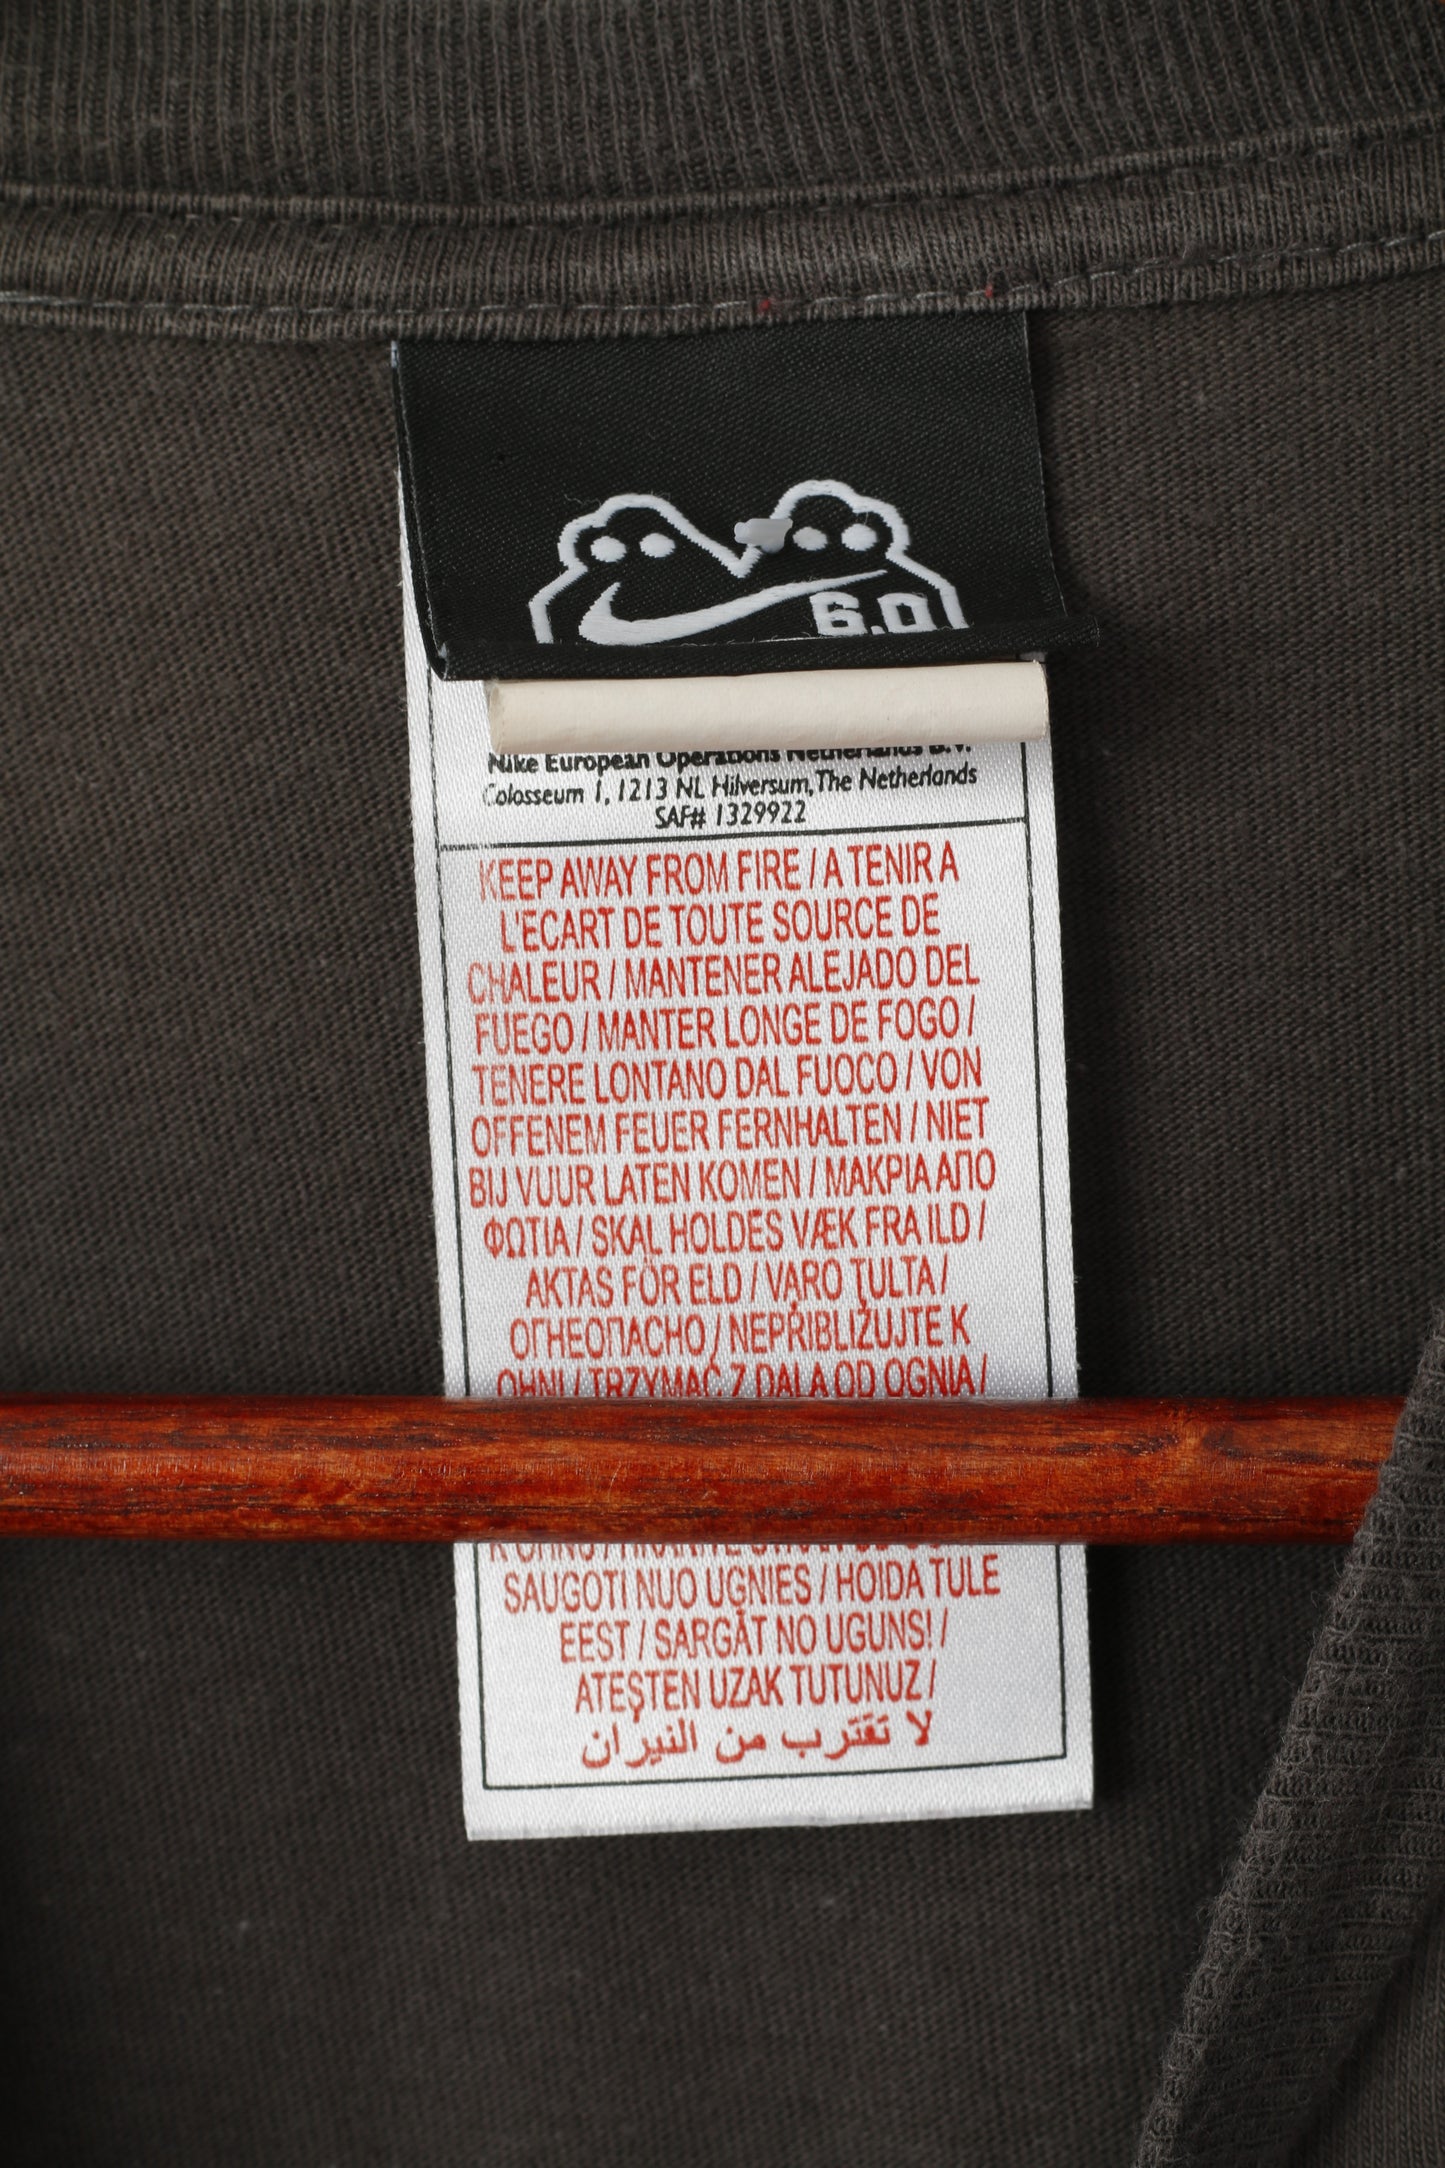 Nike Homme L T-Shirt Gris Coton Graphique 6.0 Sportswear Ras du Cou Haut